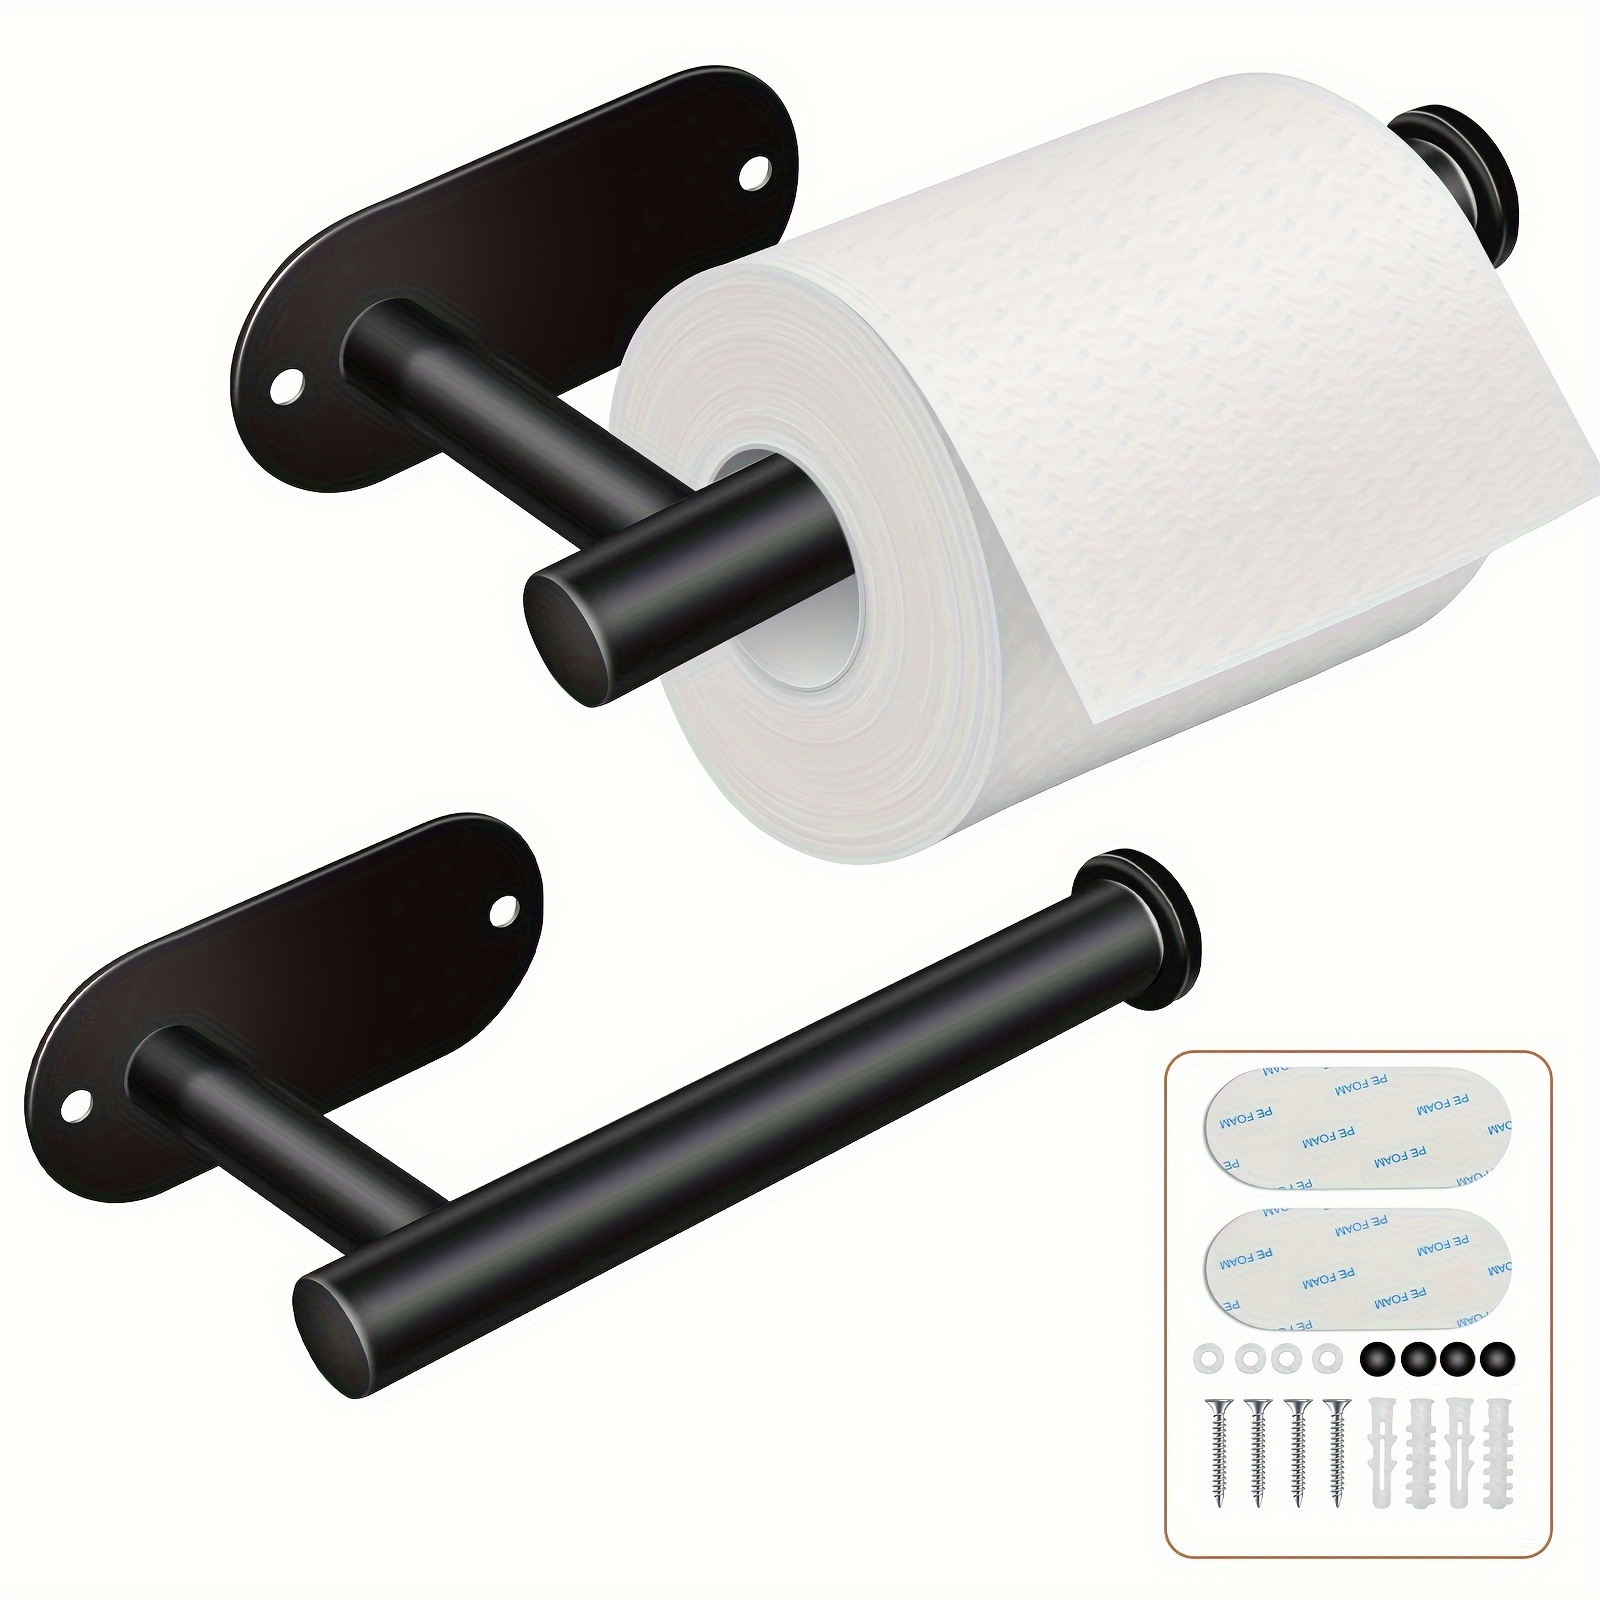 soporte de papel higiénico negro de acero inoxidable 304 3M mejor soporte  de papel higiénico soporte - Compre soporte de papel higiénico de cromo,  soporte de papel higiénico de nube, soporte de